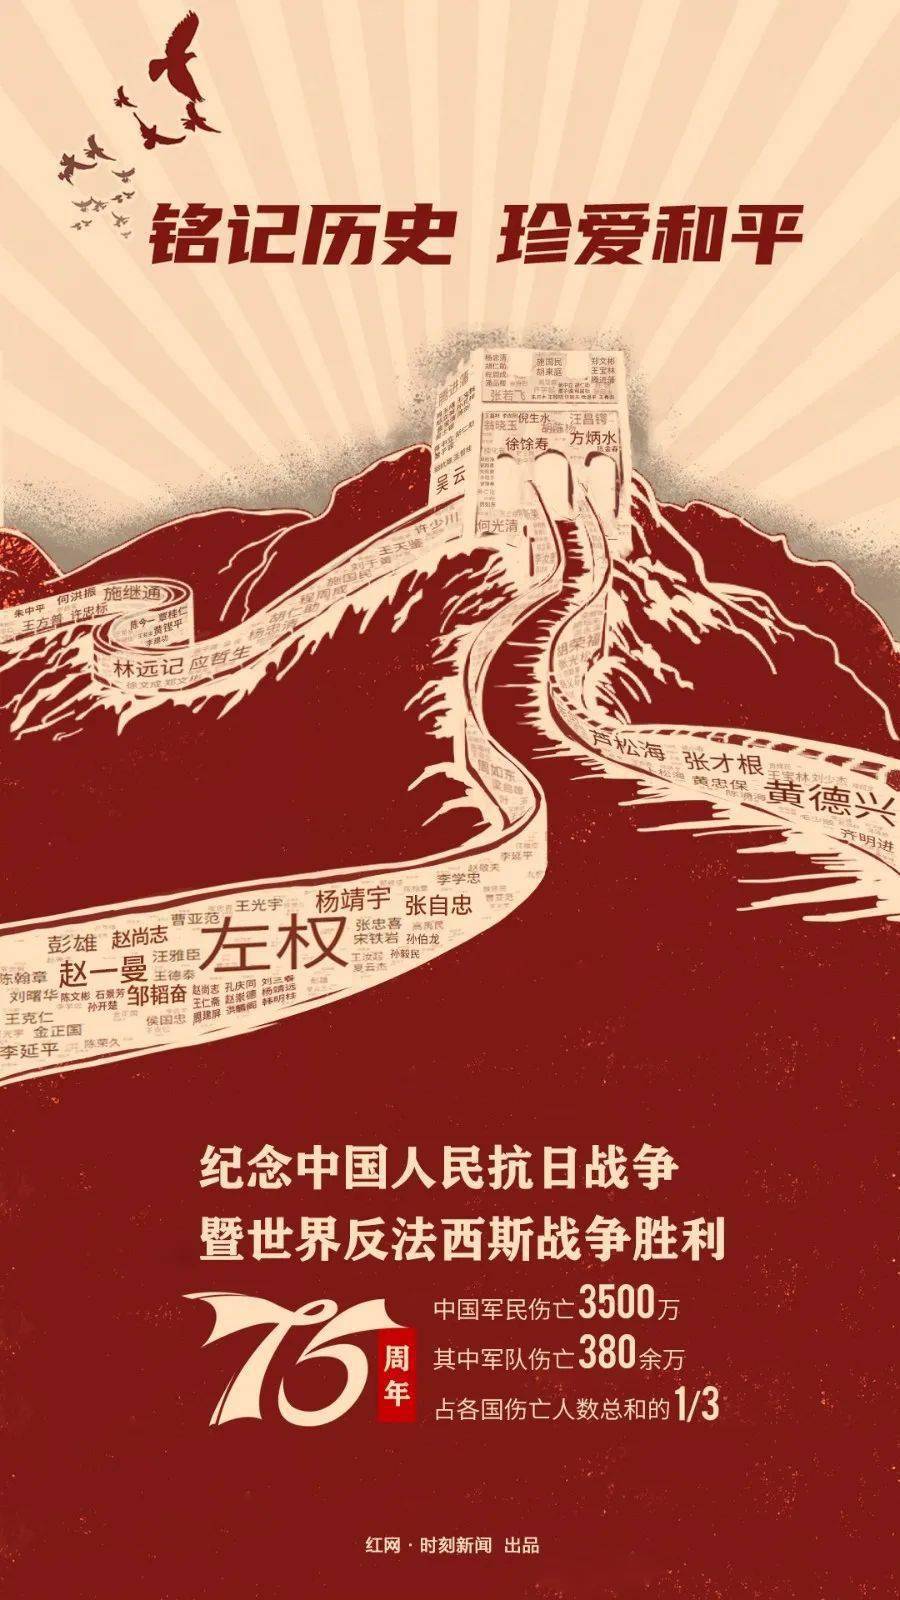 海报丨纪念抗战胜利75周年:铭记历史 珍爱和平